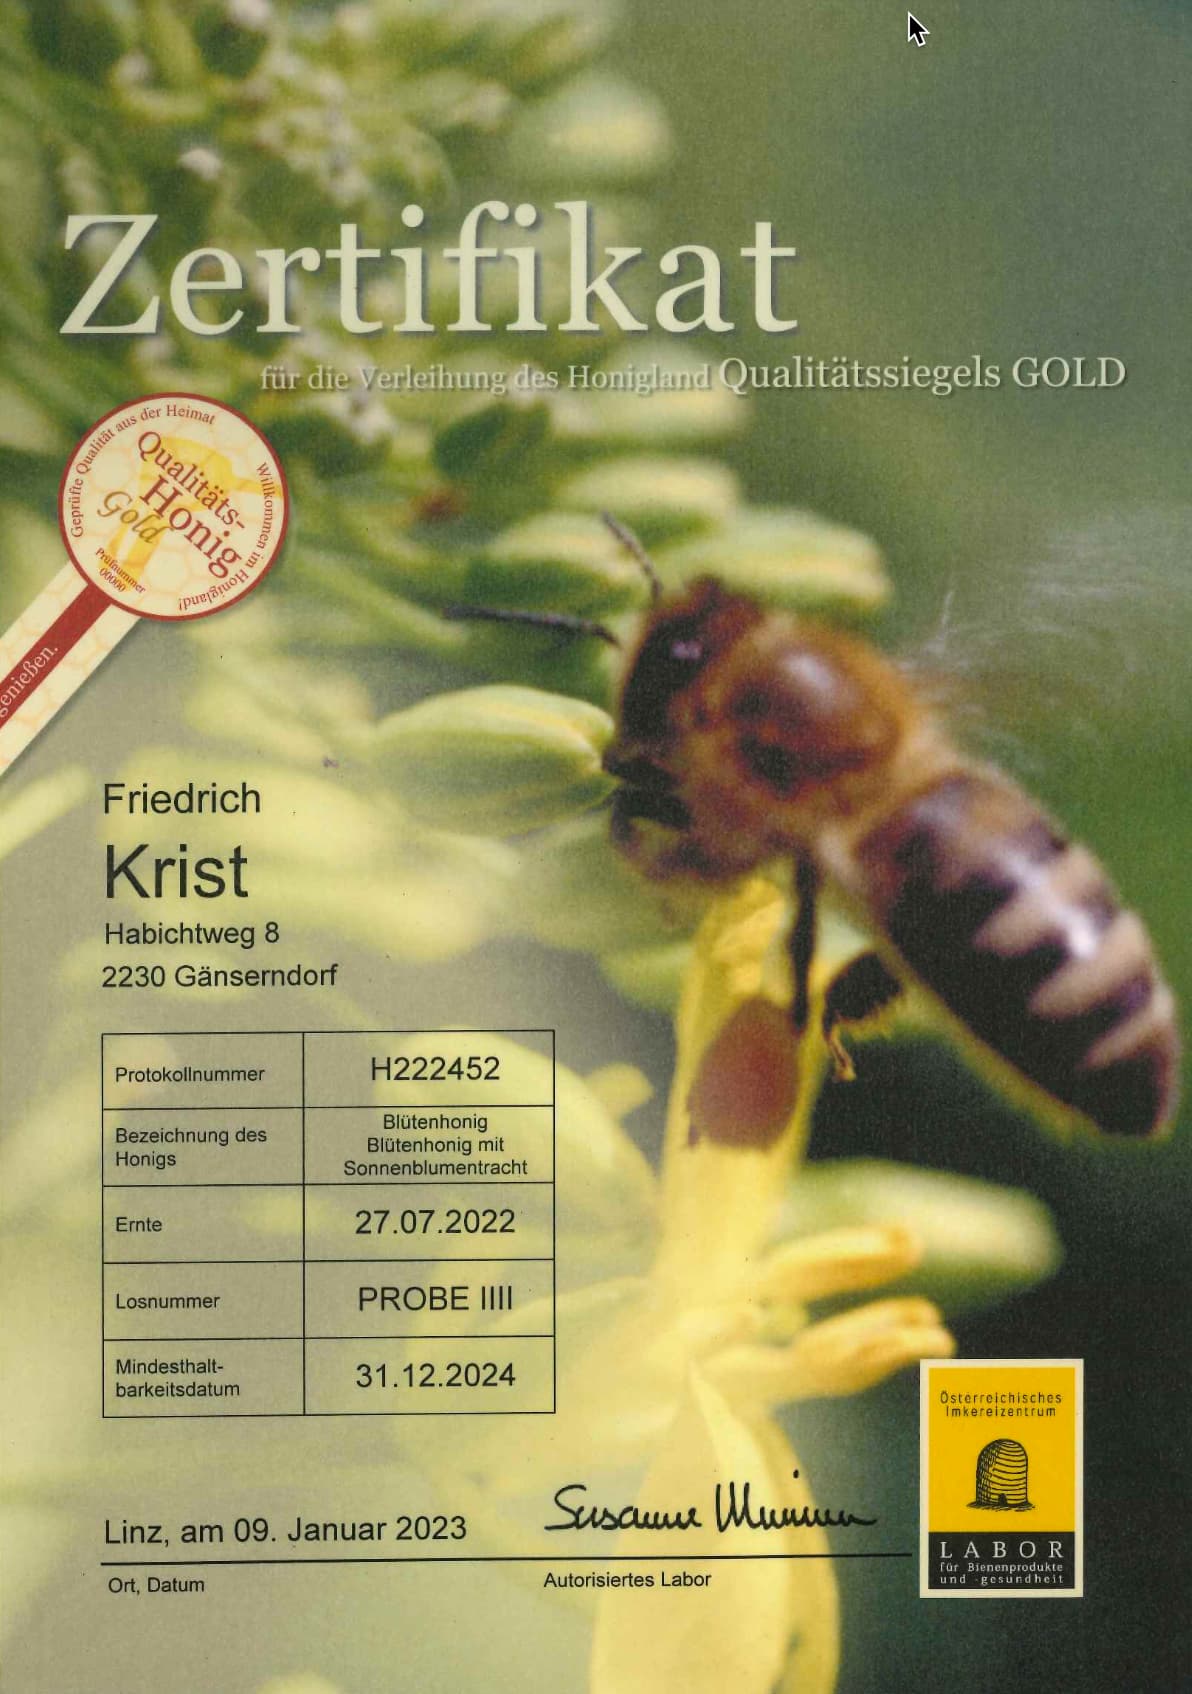 Zertifikat Qualitäts-Honig Gold Blütenhonig mit Sonnenblumentracht